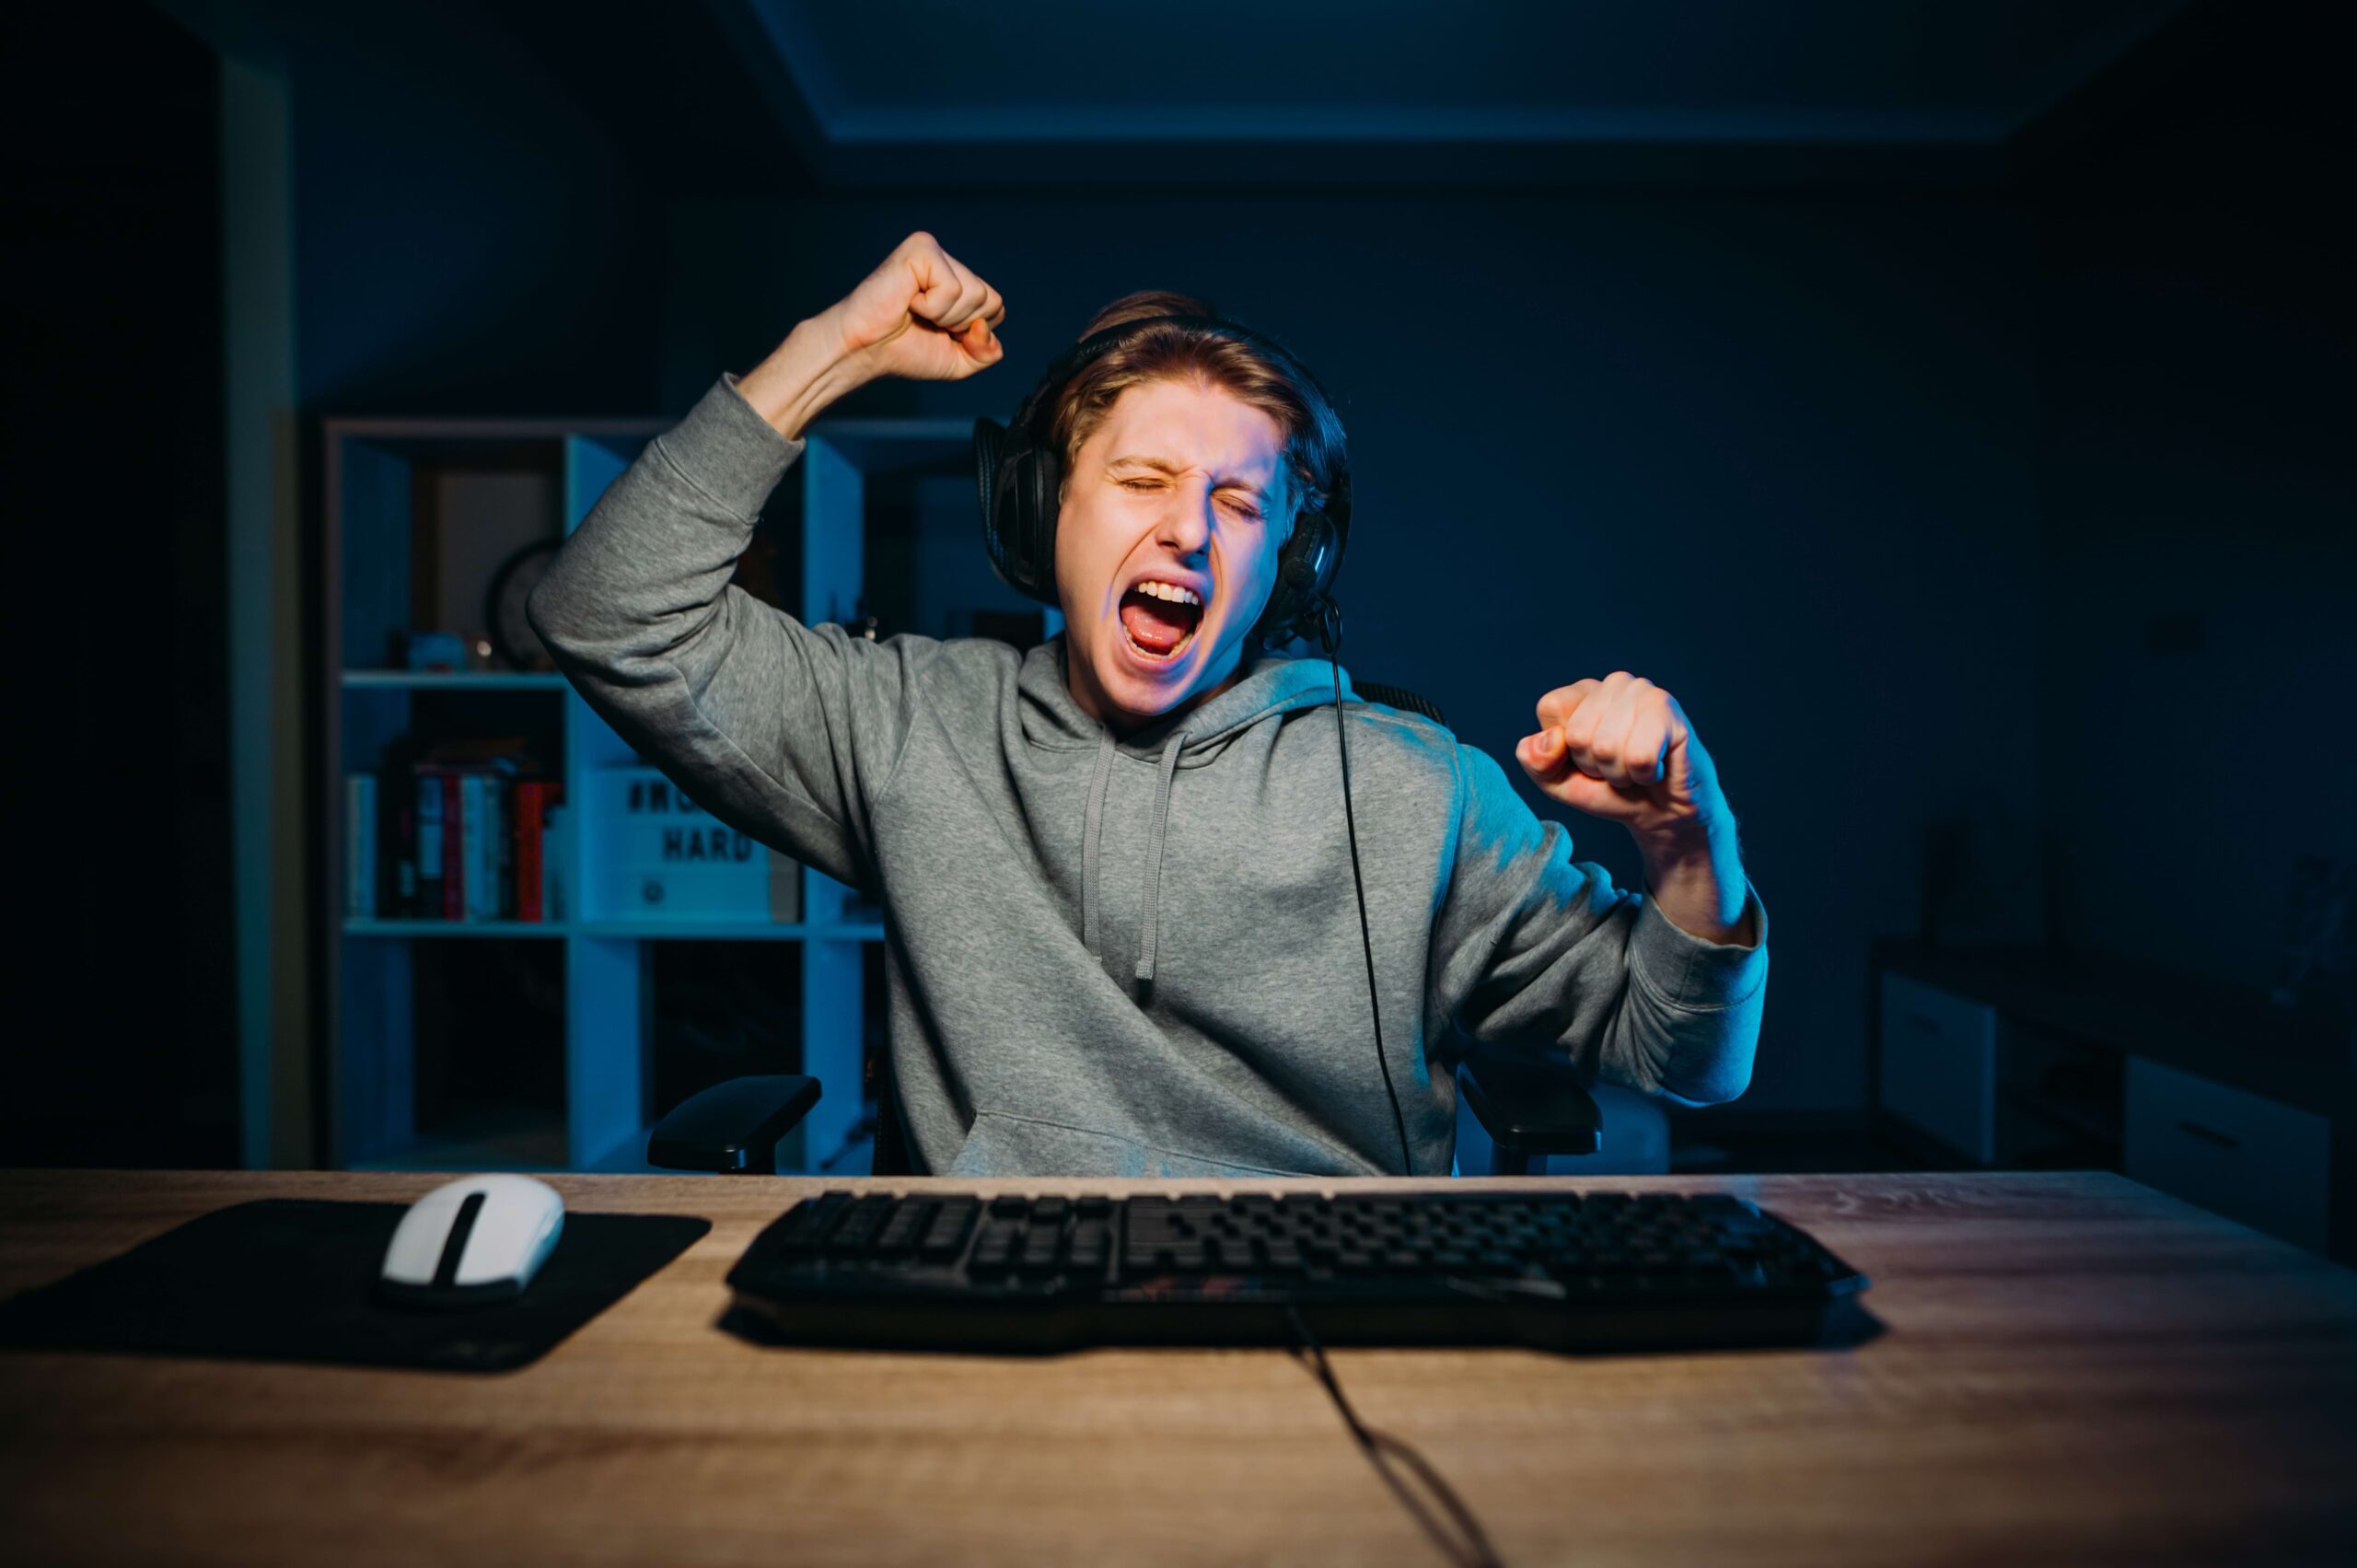 Homem jovem comemorando com sorriso e mãos levantadas no seu setup gamer